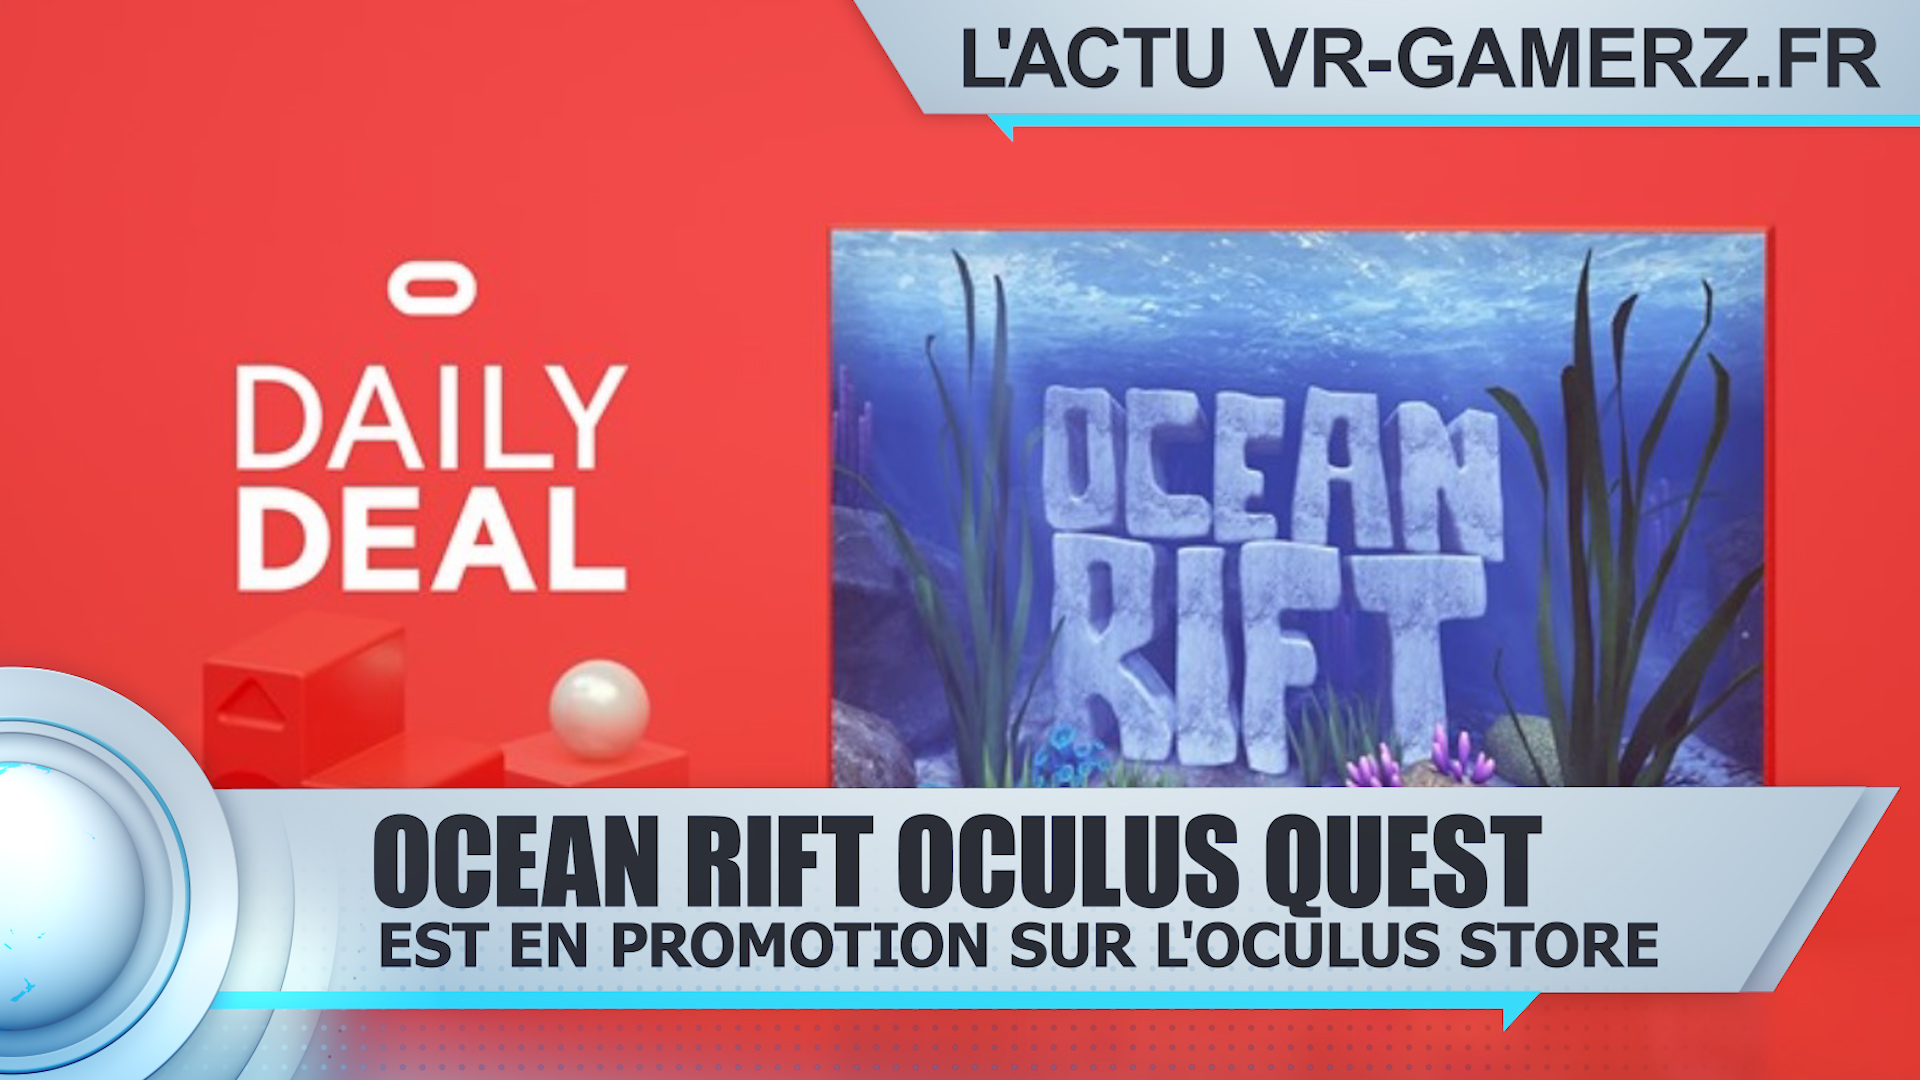 Ocean Rift est en promotion sur Oculus quest